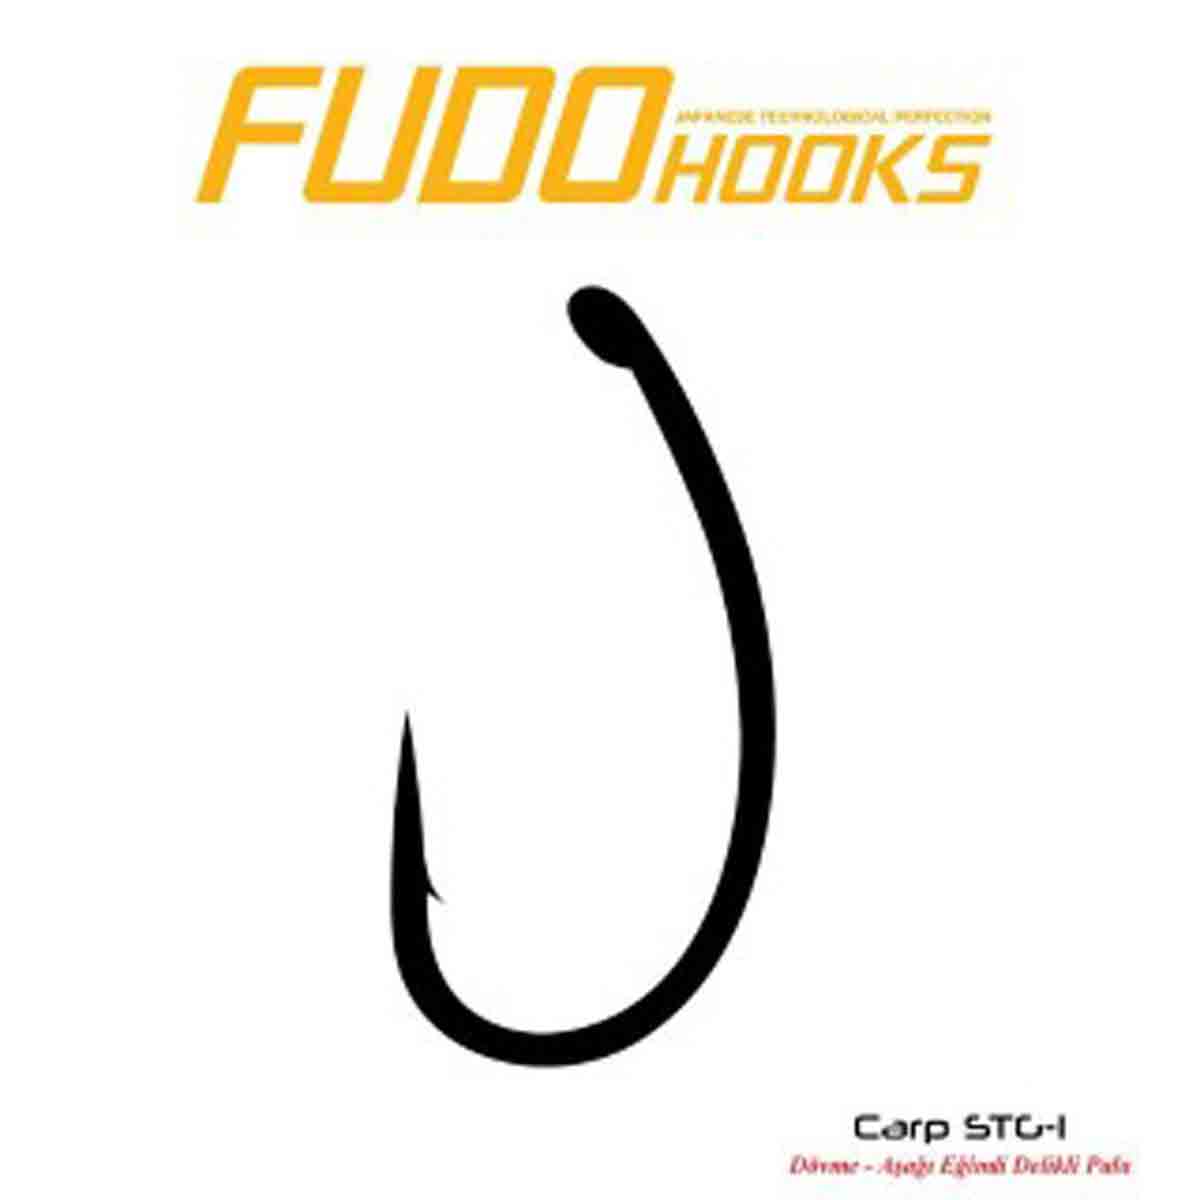 Fudo 2411 Carp STG Black Nikel İğne Sazan balığı avcılığında kullanılma